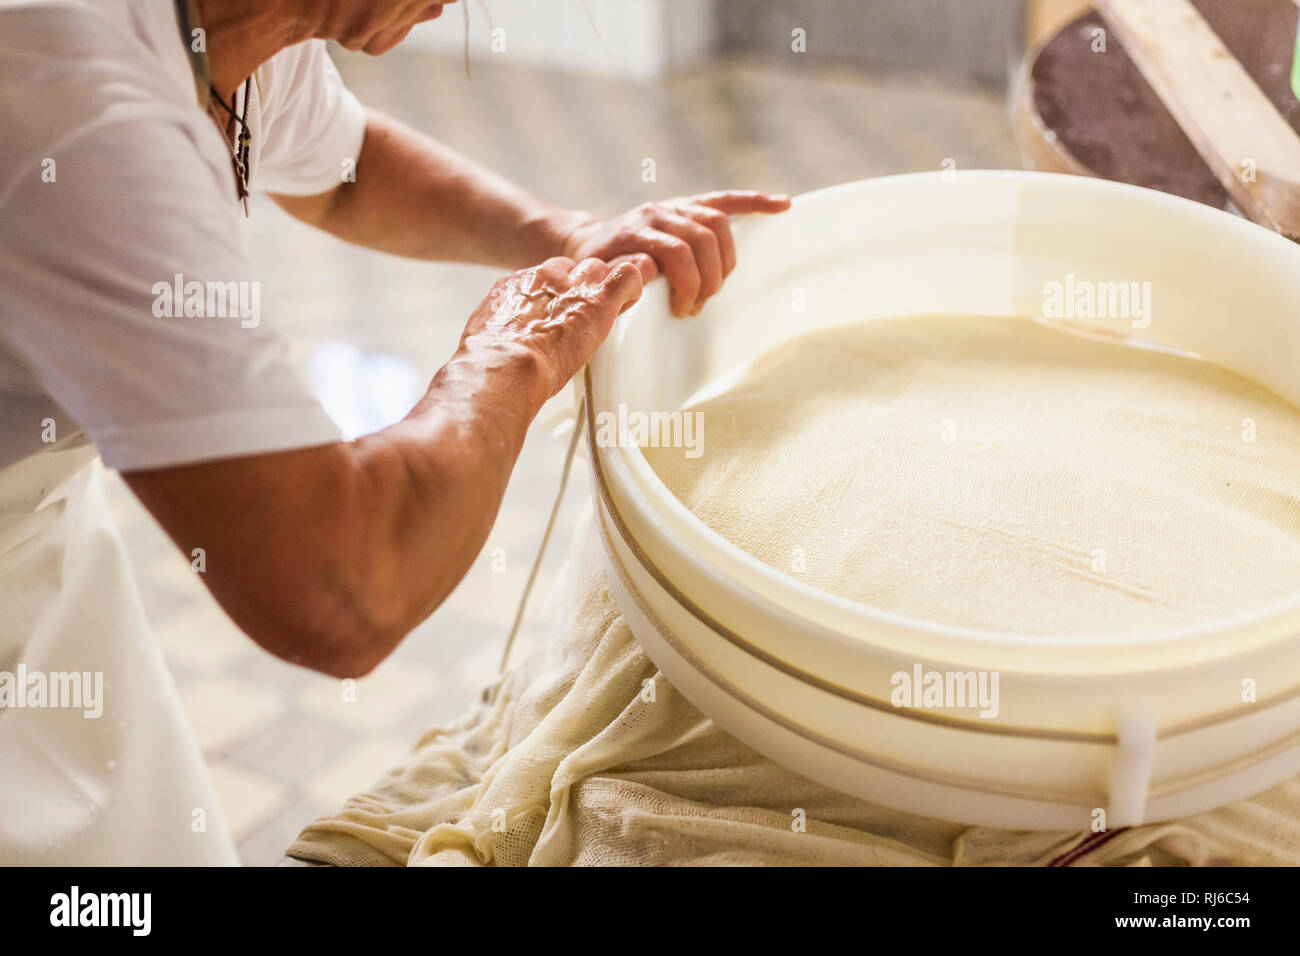 Die Sennerin verarbeitet frische Milch zu würzigem Alm-Käse, der Käsebruch wird aus dem Kessel gehoben und zu einem Laib weiterverarbeitet, Stock Photo